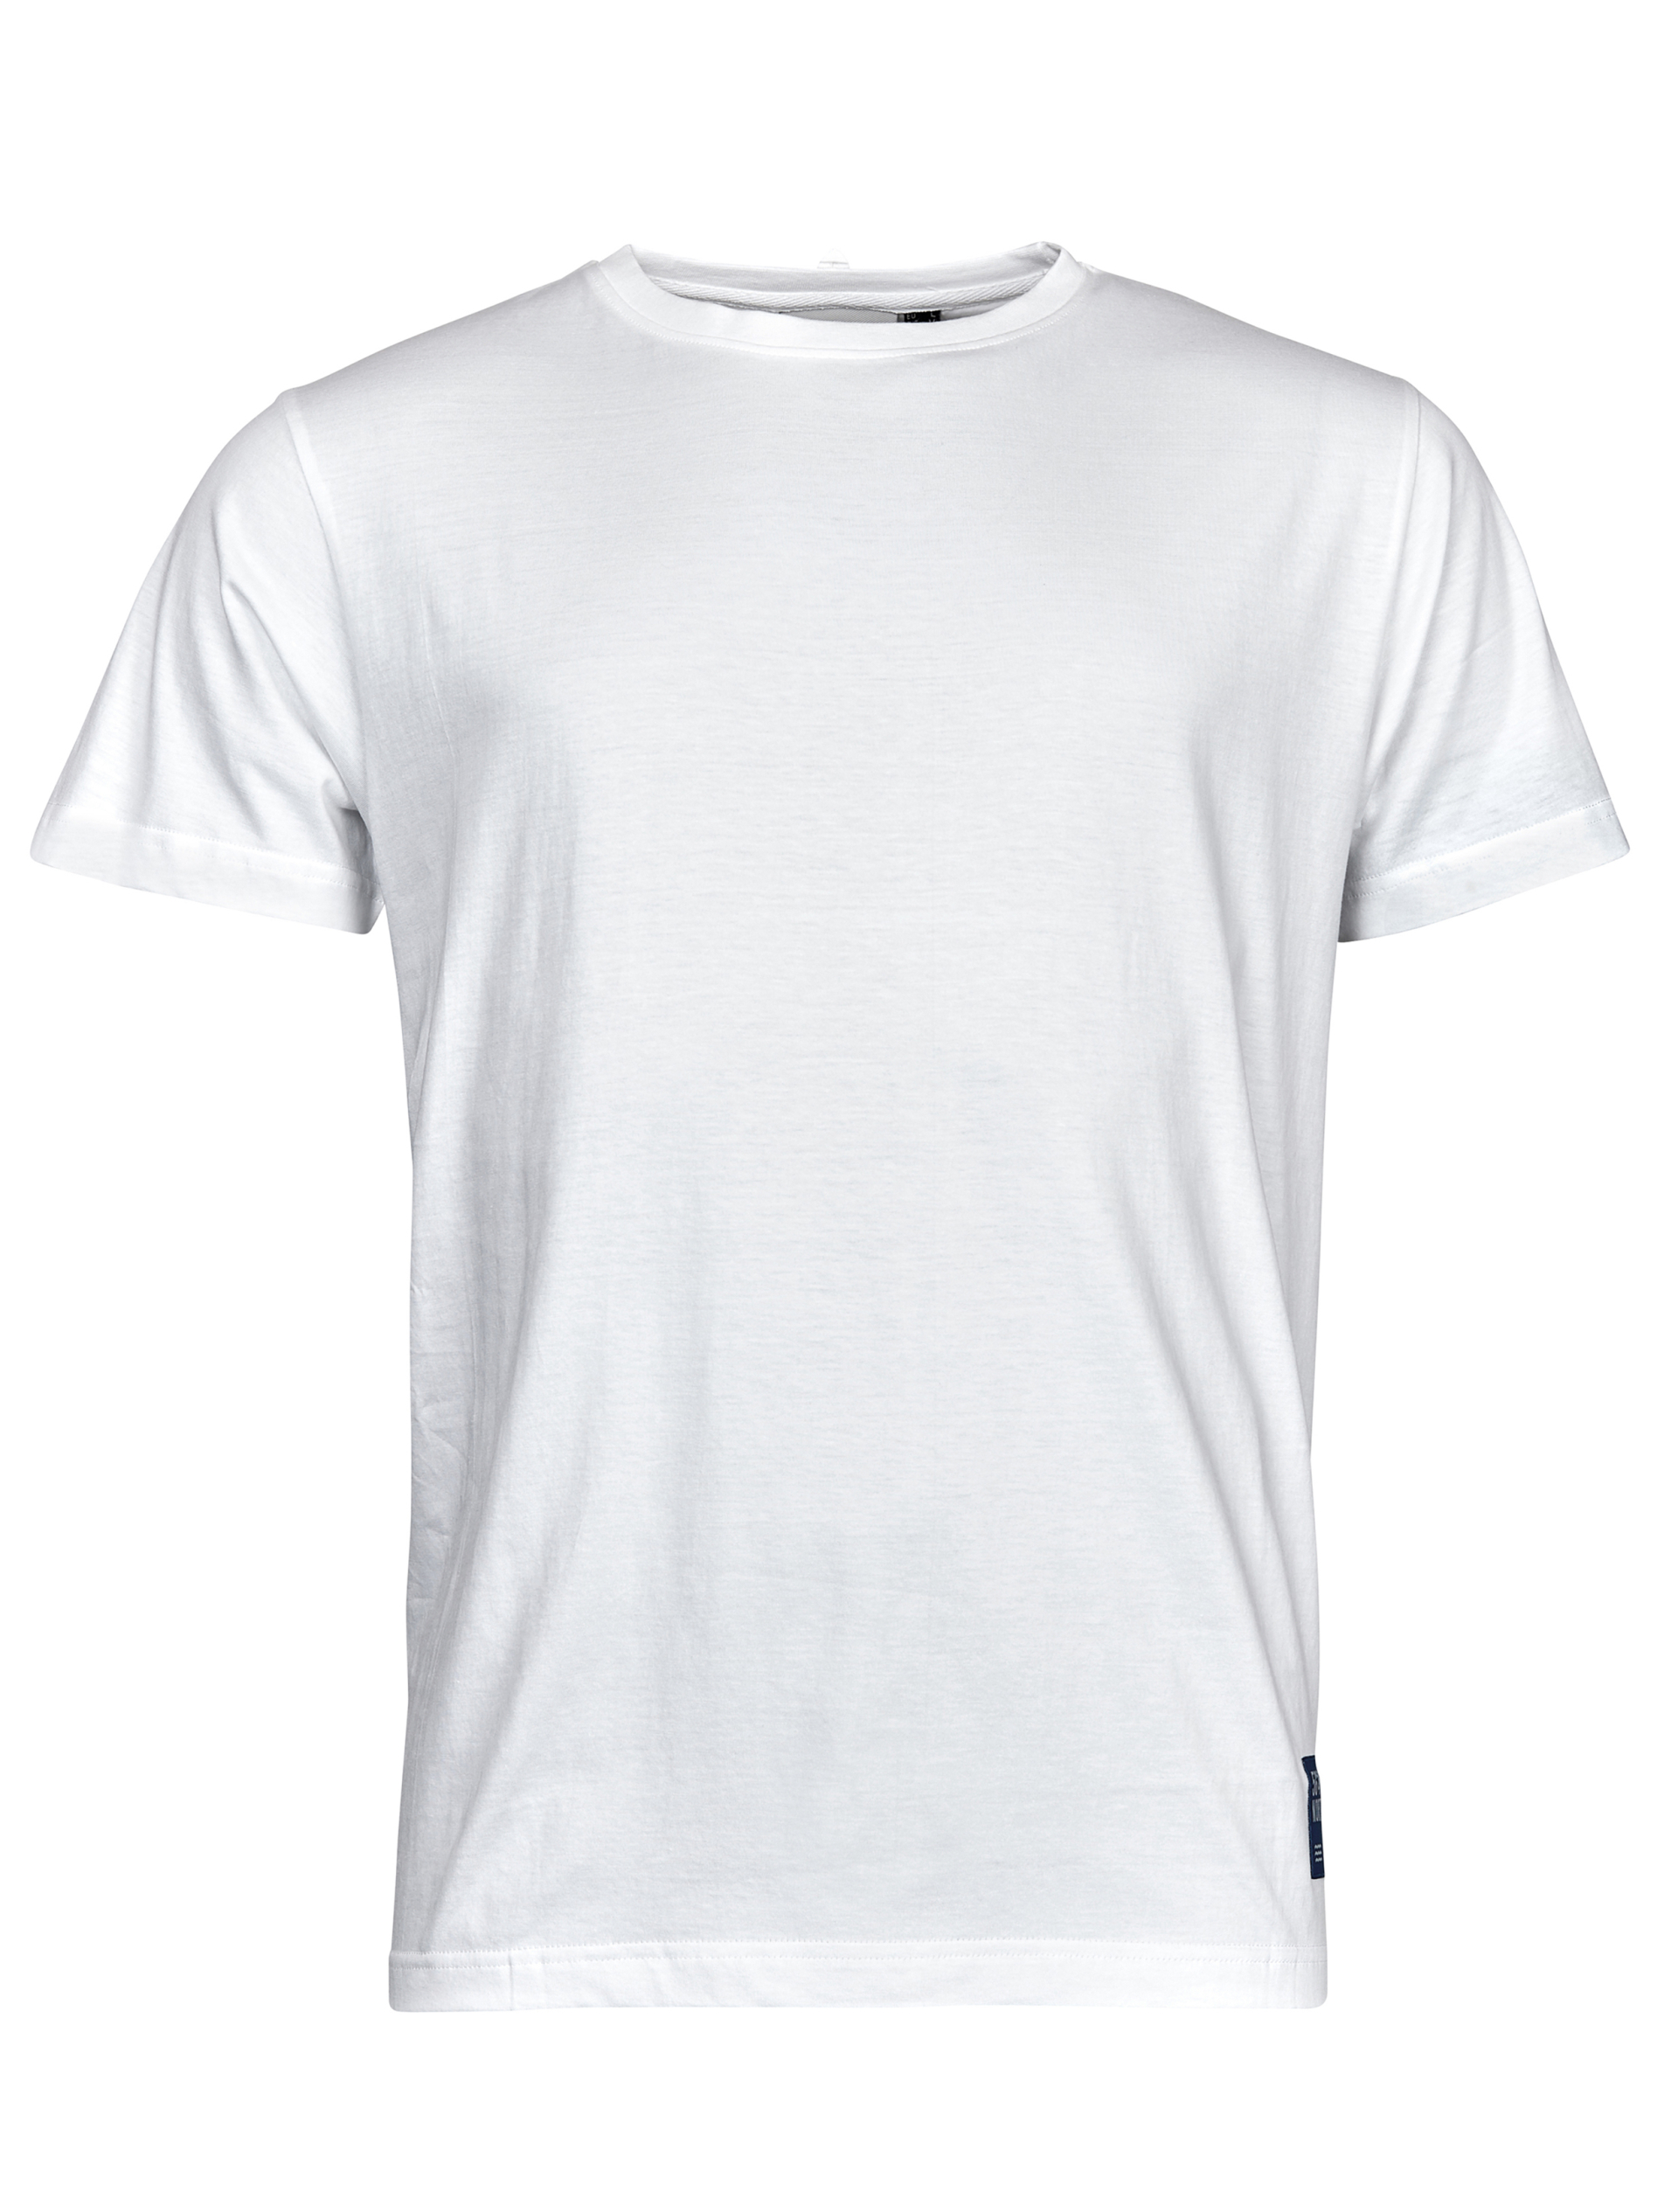 North T-shirt hvid / white